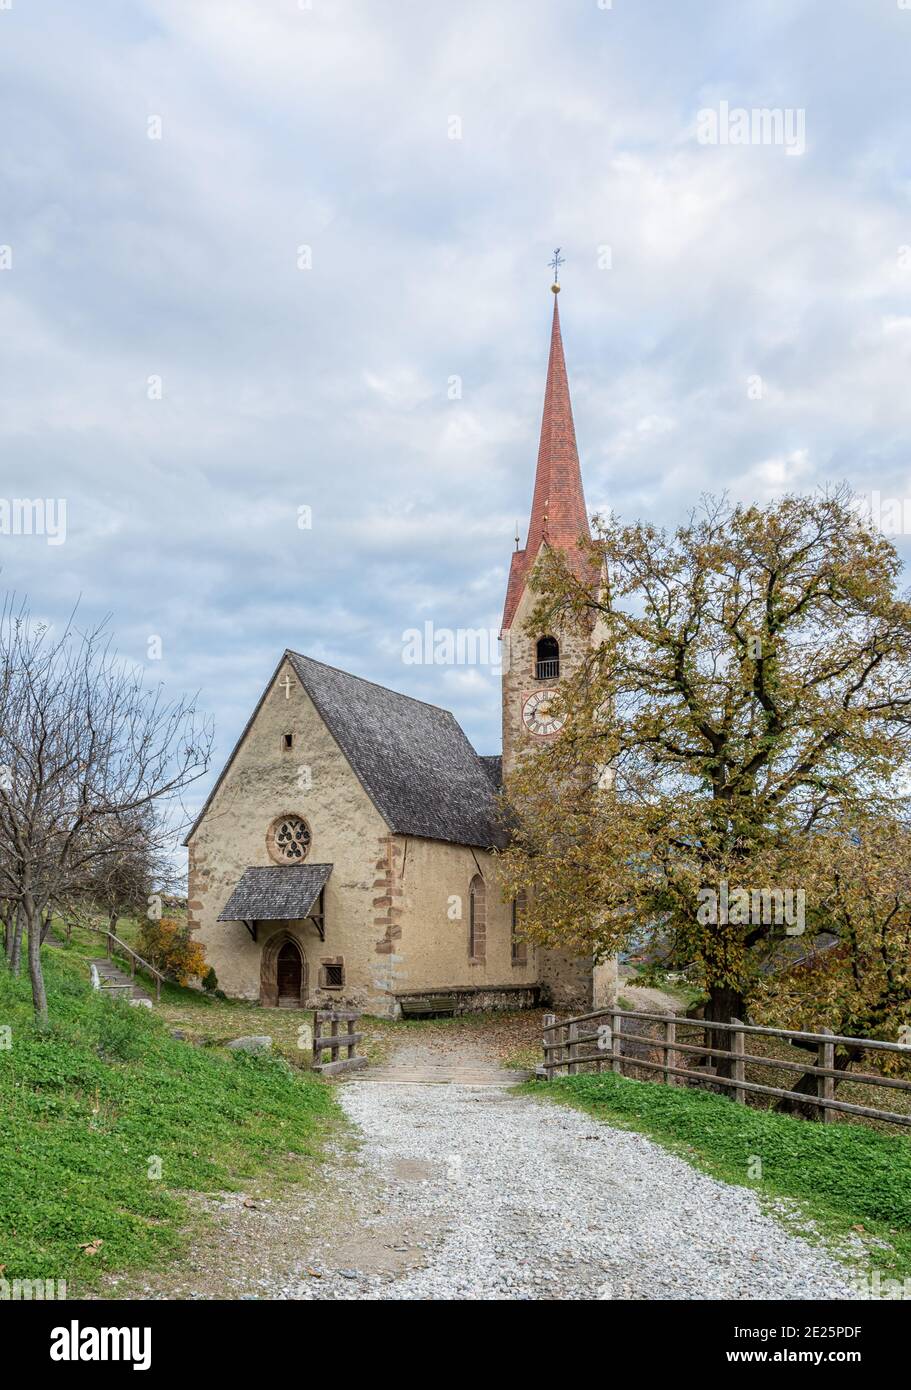 Chiesa di San Ingenuino, Barbiano Villaggio in Alto Adige, Italia settentrionale - Europa - Chiesa gotica Foto Stock